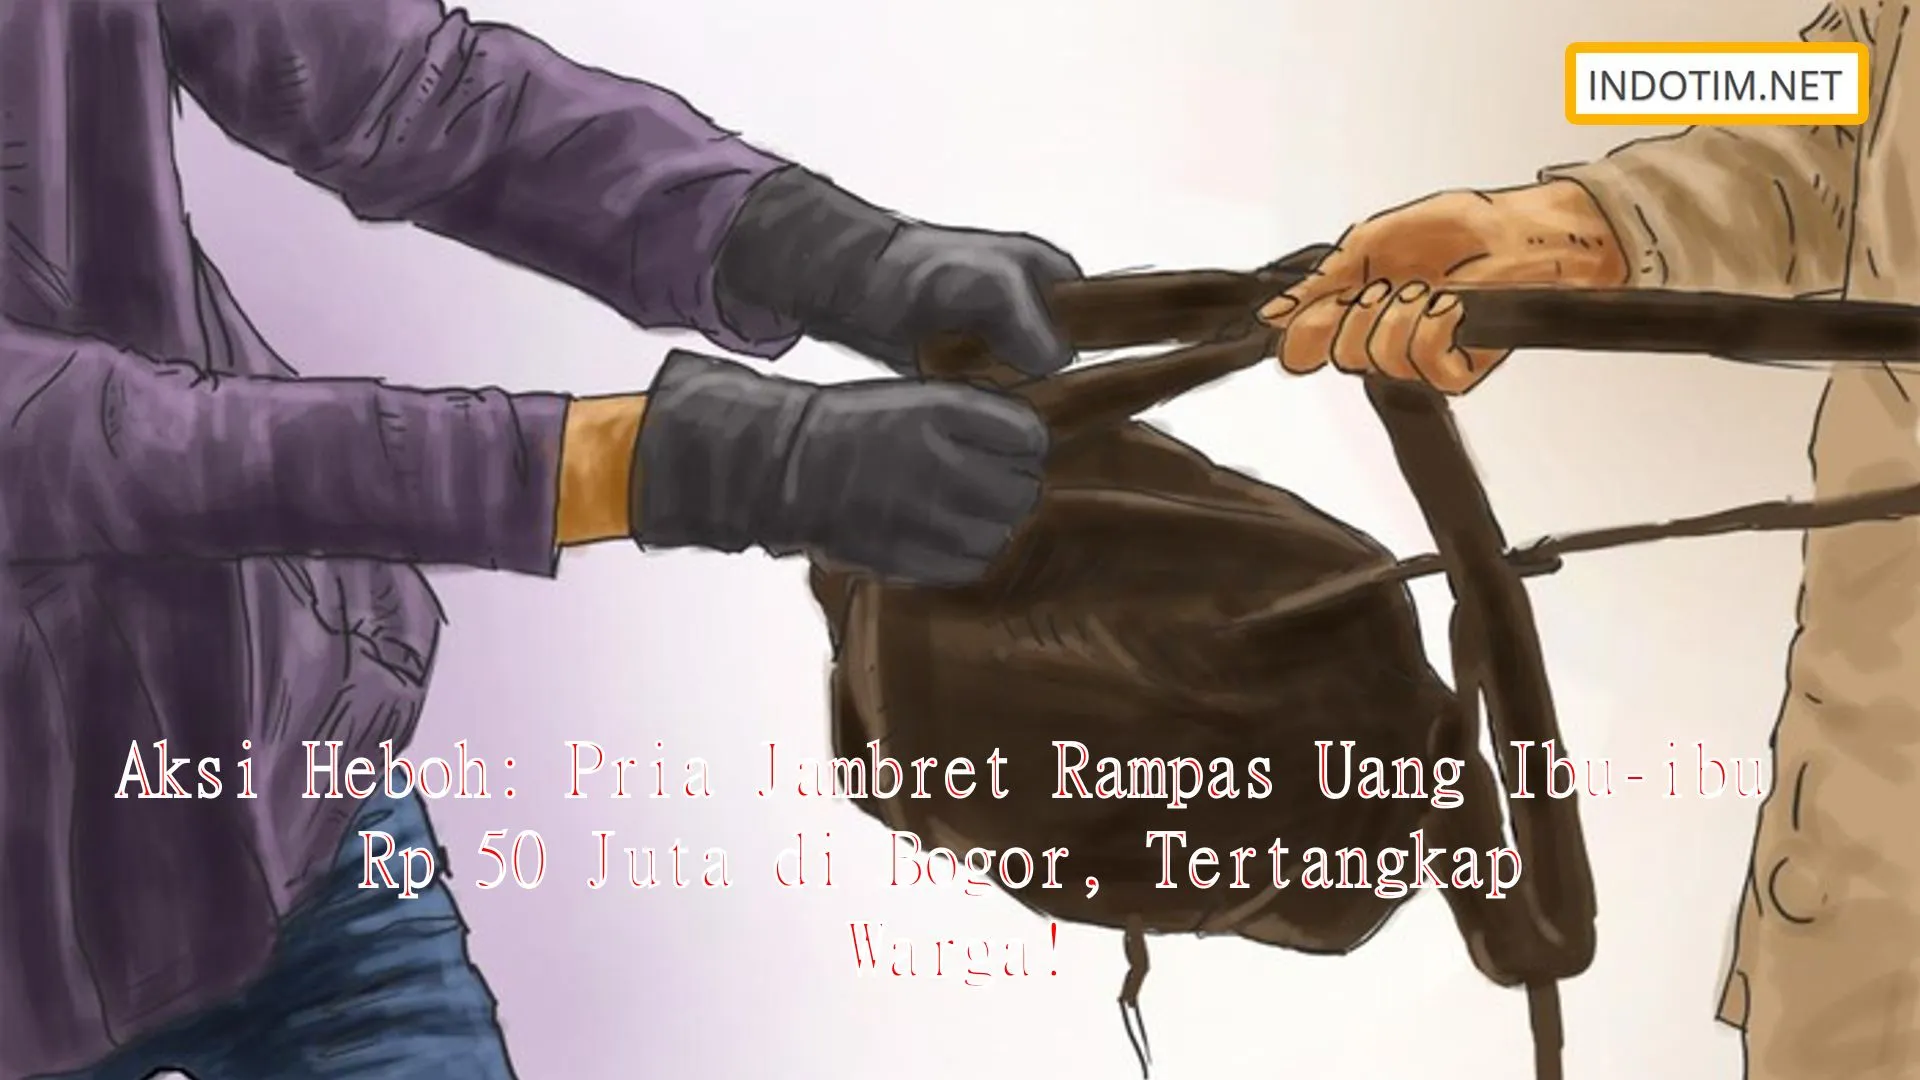 Aksi Heboh: Pria Jambret Rampas Uang Ibu-ibu Rp 50 Juta di Bogor, Tertangkap Warga!